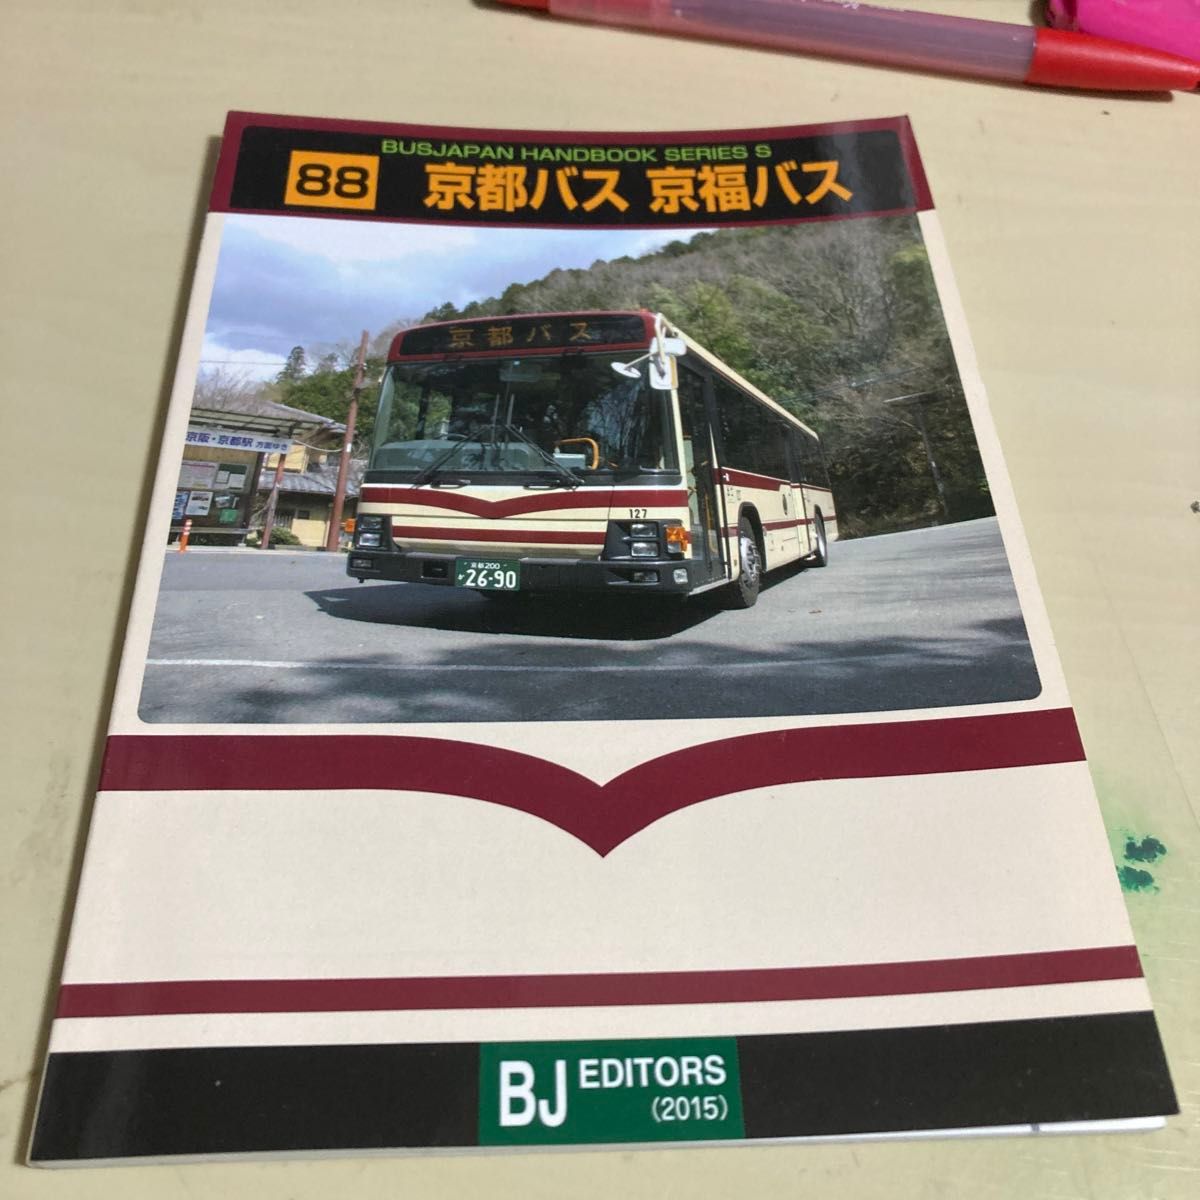 バスジャパンハンドブック/京都バス 京福バス